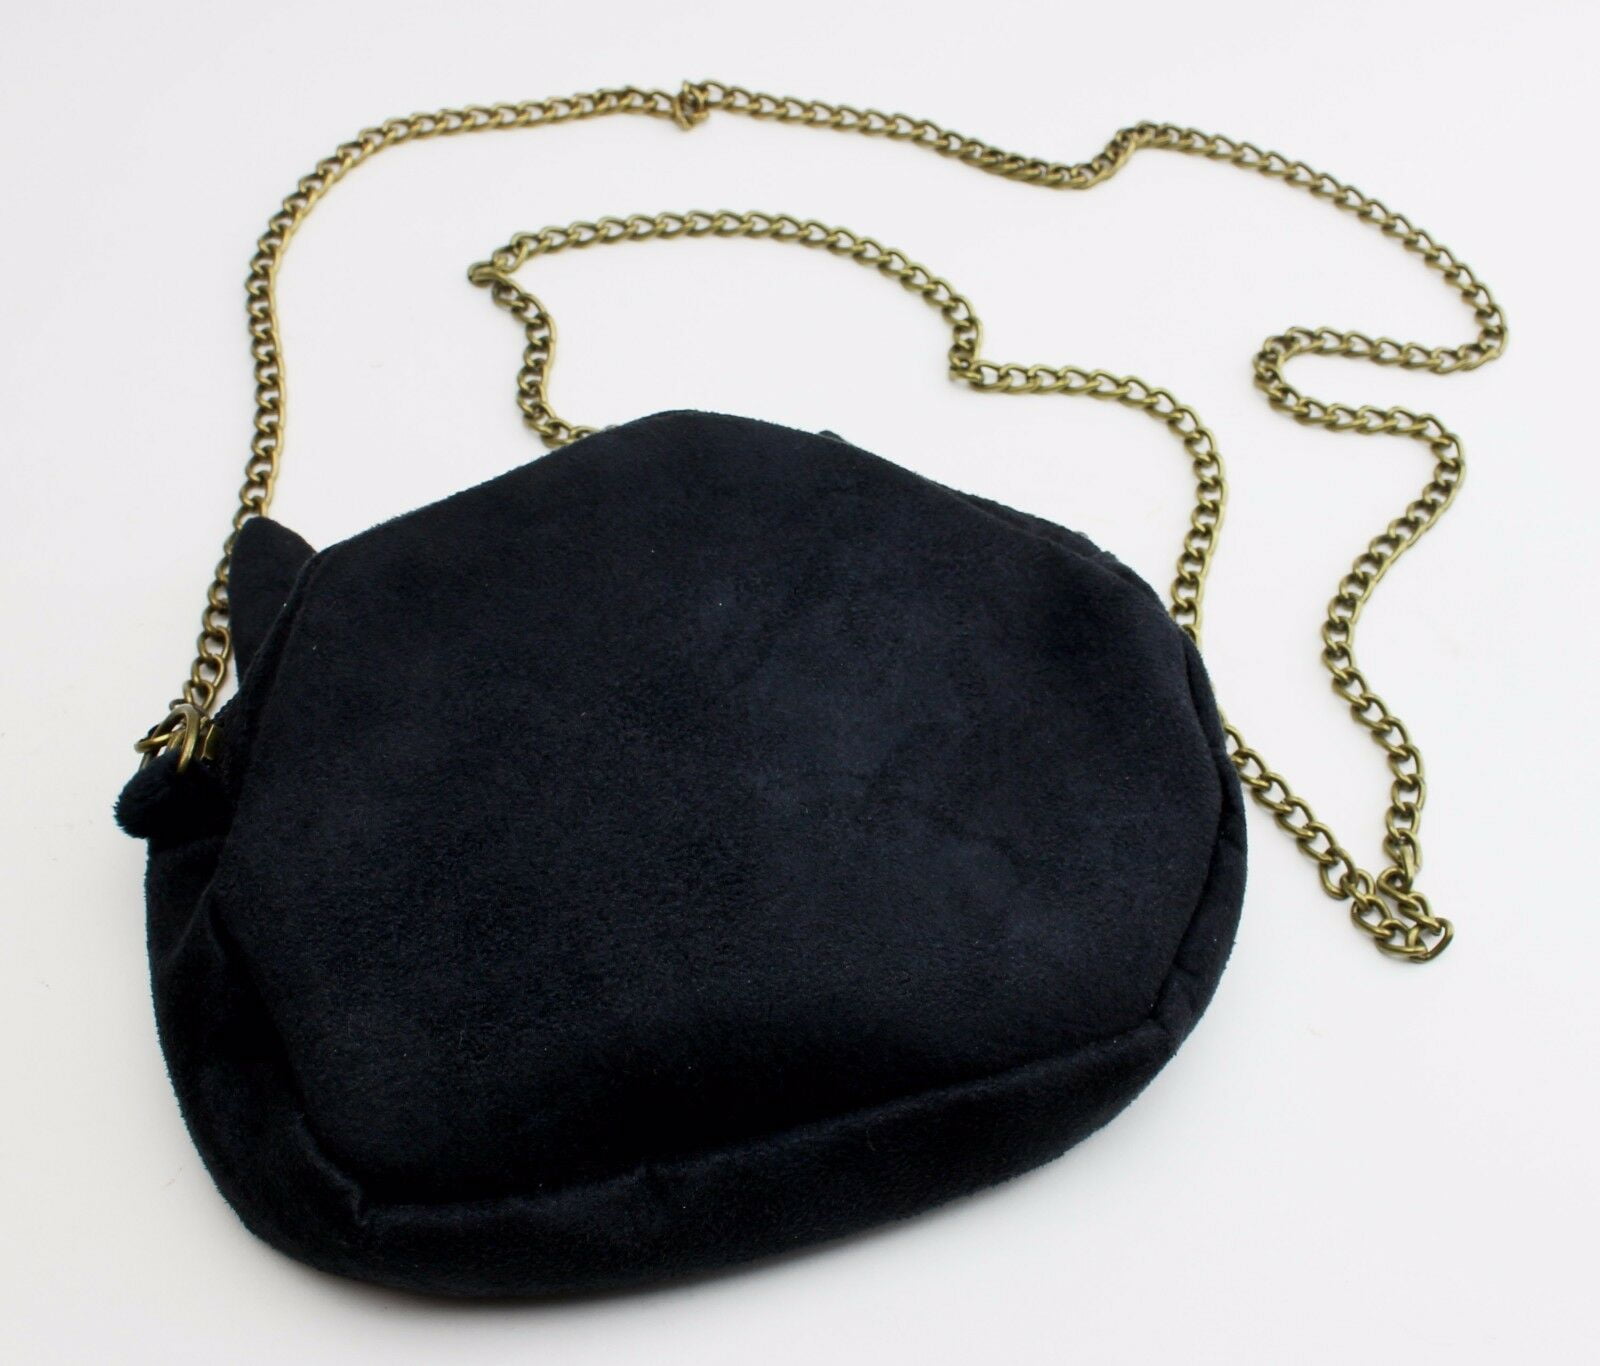 Download and 3D print your own designer handbag! – Science Envy